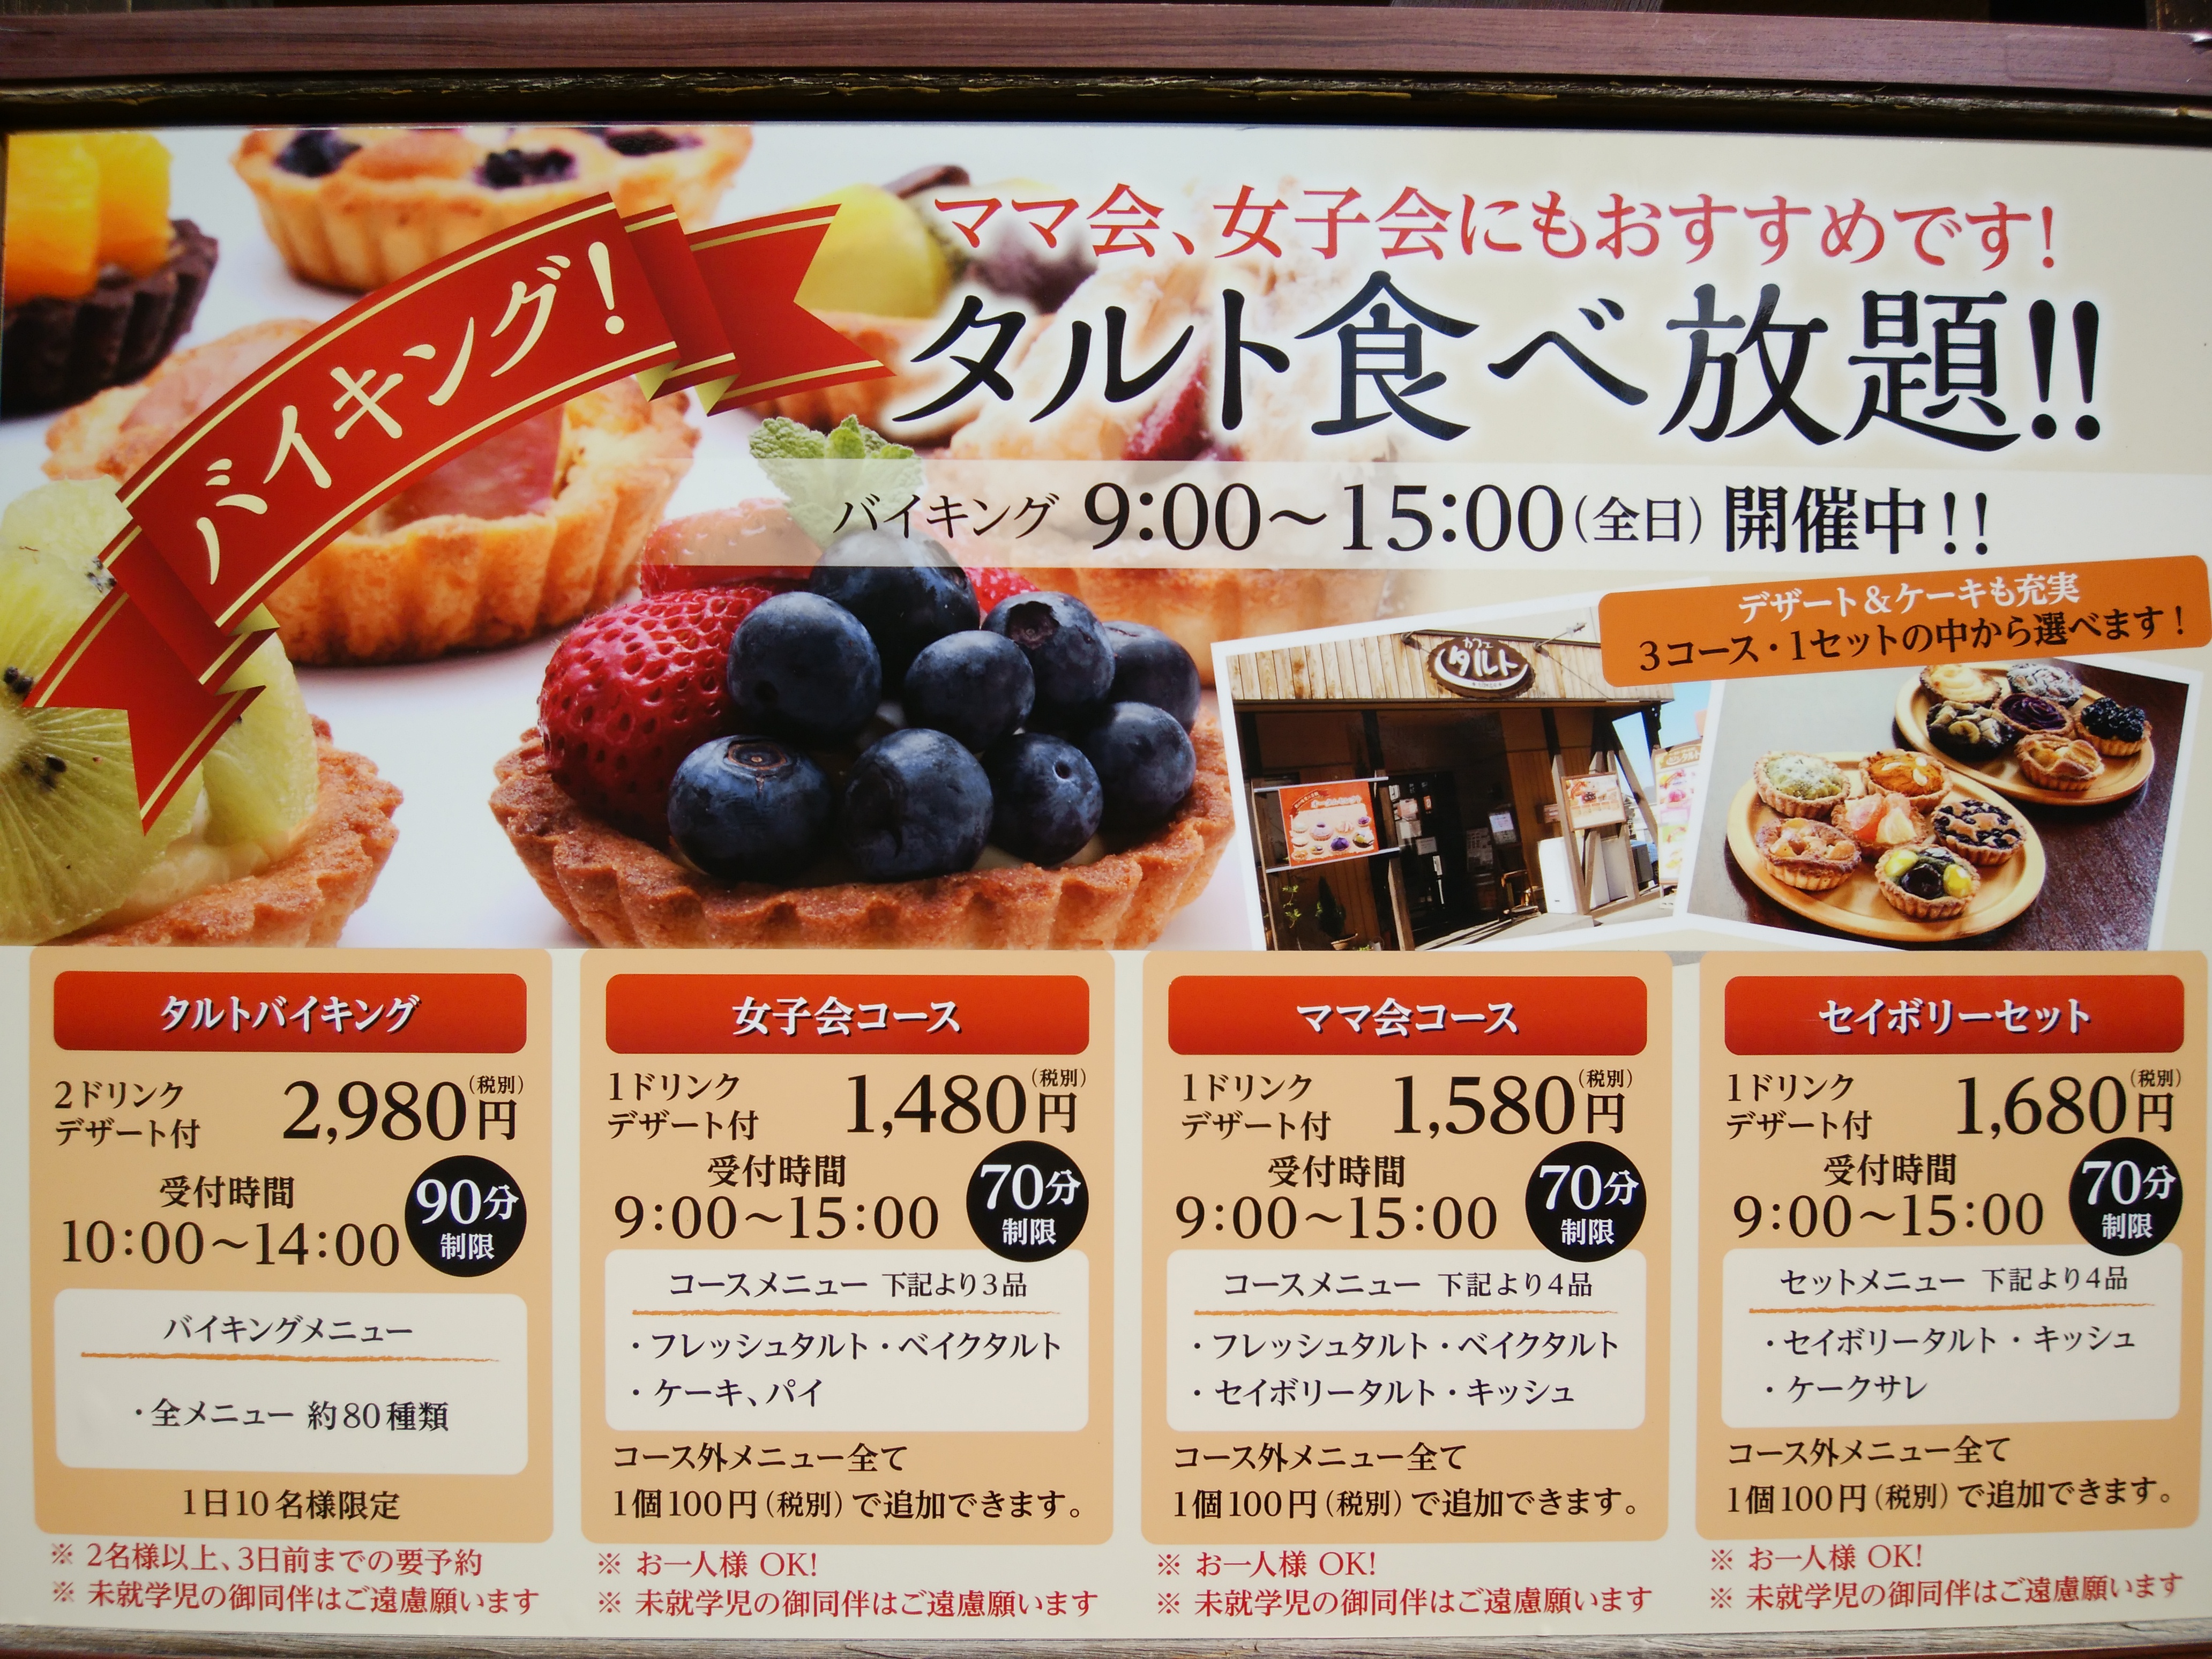 ベーカリーカフェ タルト 名古屋市守山区 三度の飯よりケーキ好き 三重県にもっとケーキバイキングを